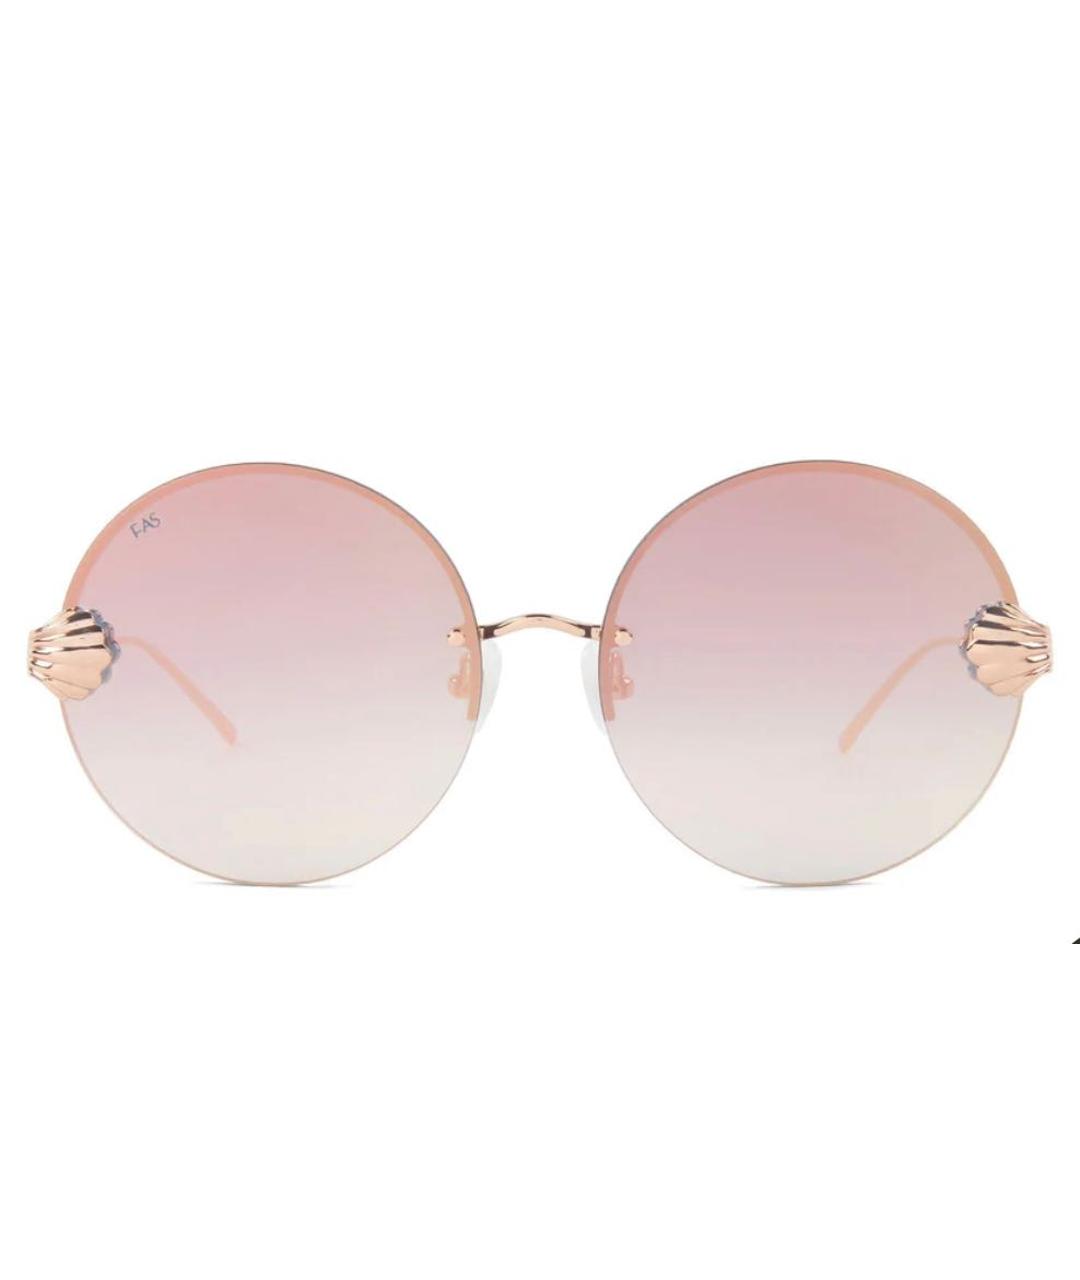 FOR ART'S SAKE Розовые пластиковые солнцезащитные очки, фото 1